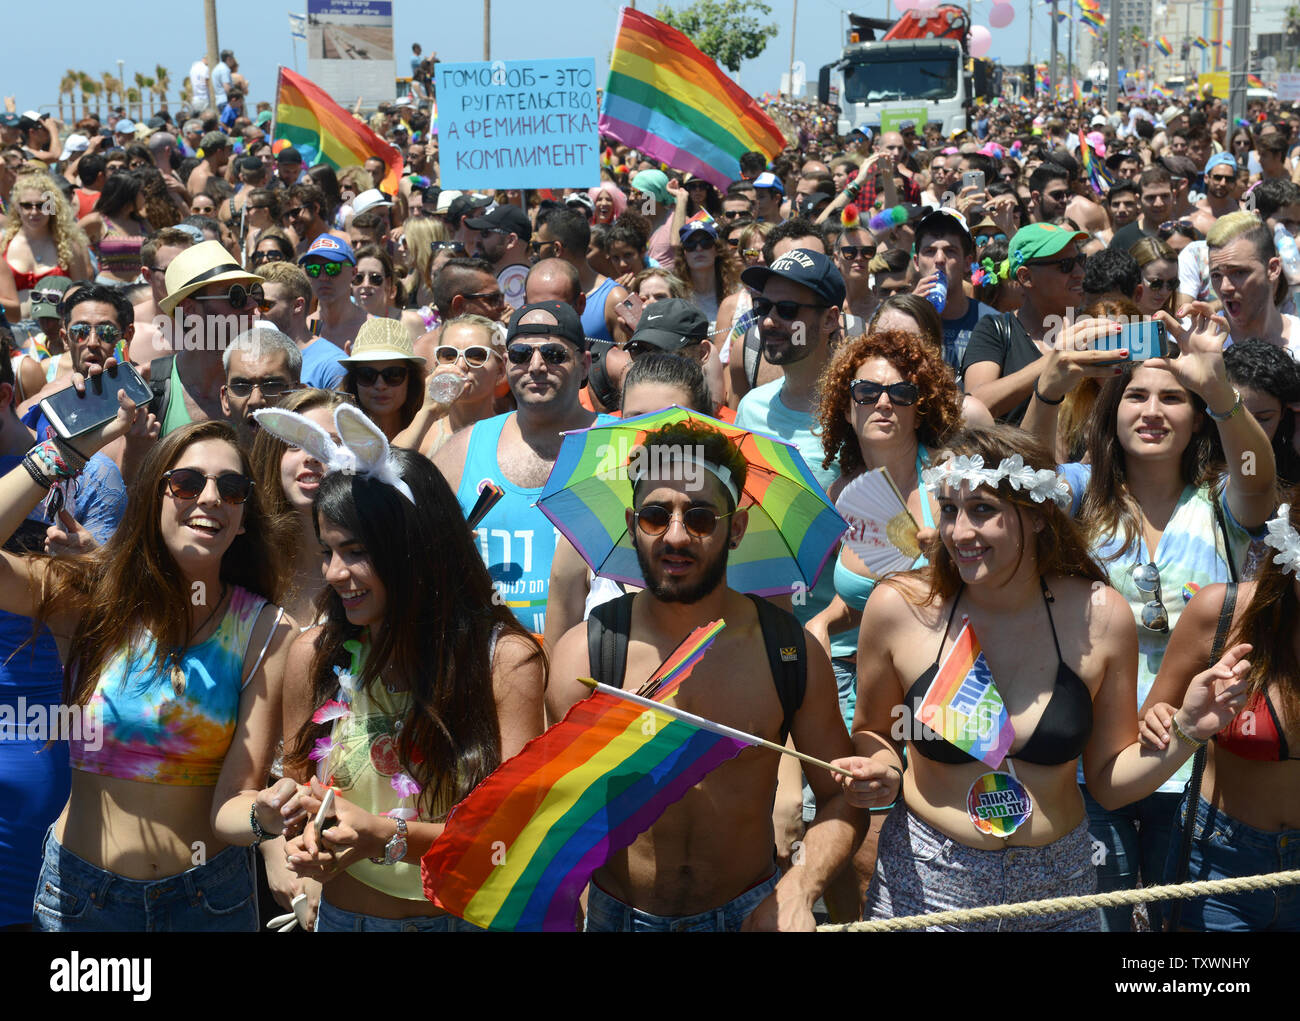 Zehntausende von März in der 17. jährliche Gay Pride Parade in Tel Aviv, Israel, 12. Juni 2015. Mehr als 180.000 demonstrierten in die Parade, darunter 30.000 Touristen. Das Thema der Parade war "Tel Aviv liebt alle Geschlechter" in eine gleiche Rechte der Mitglieder Die transgender Community zu fördern. Foto von Debbie Hill/UPI Stockfoto